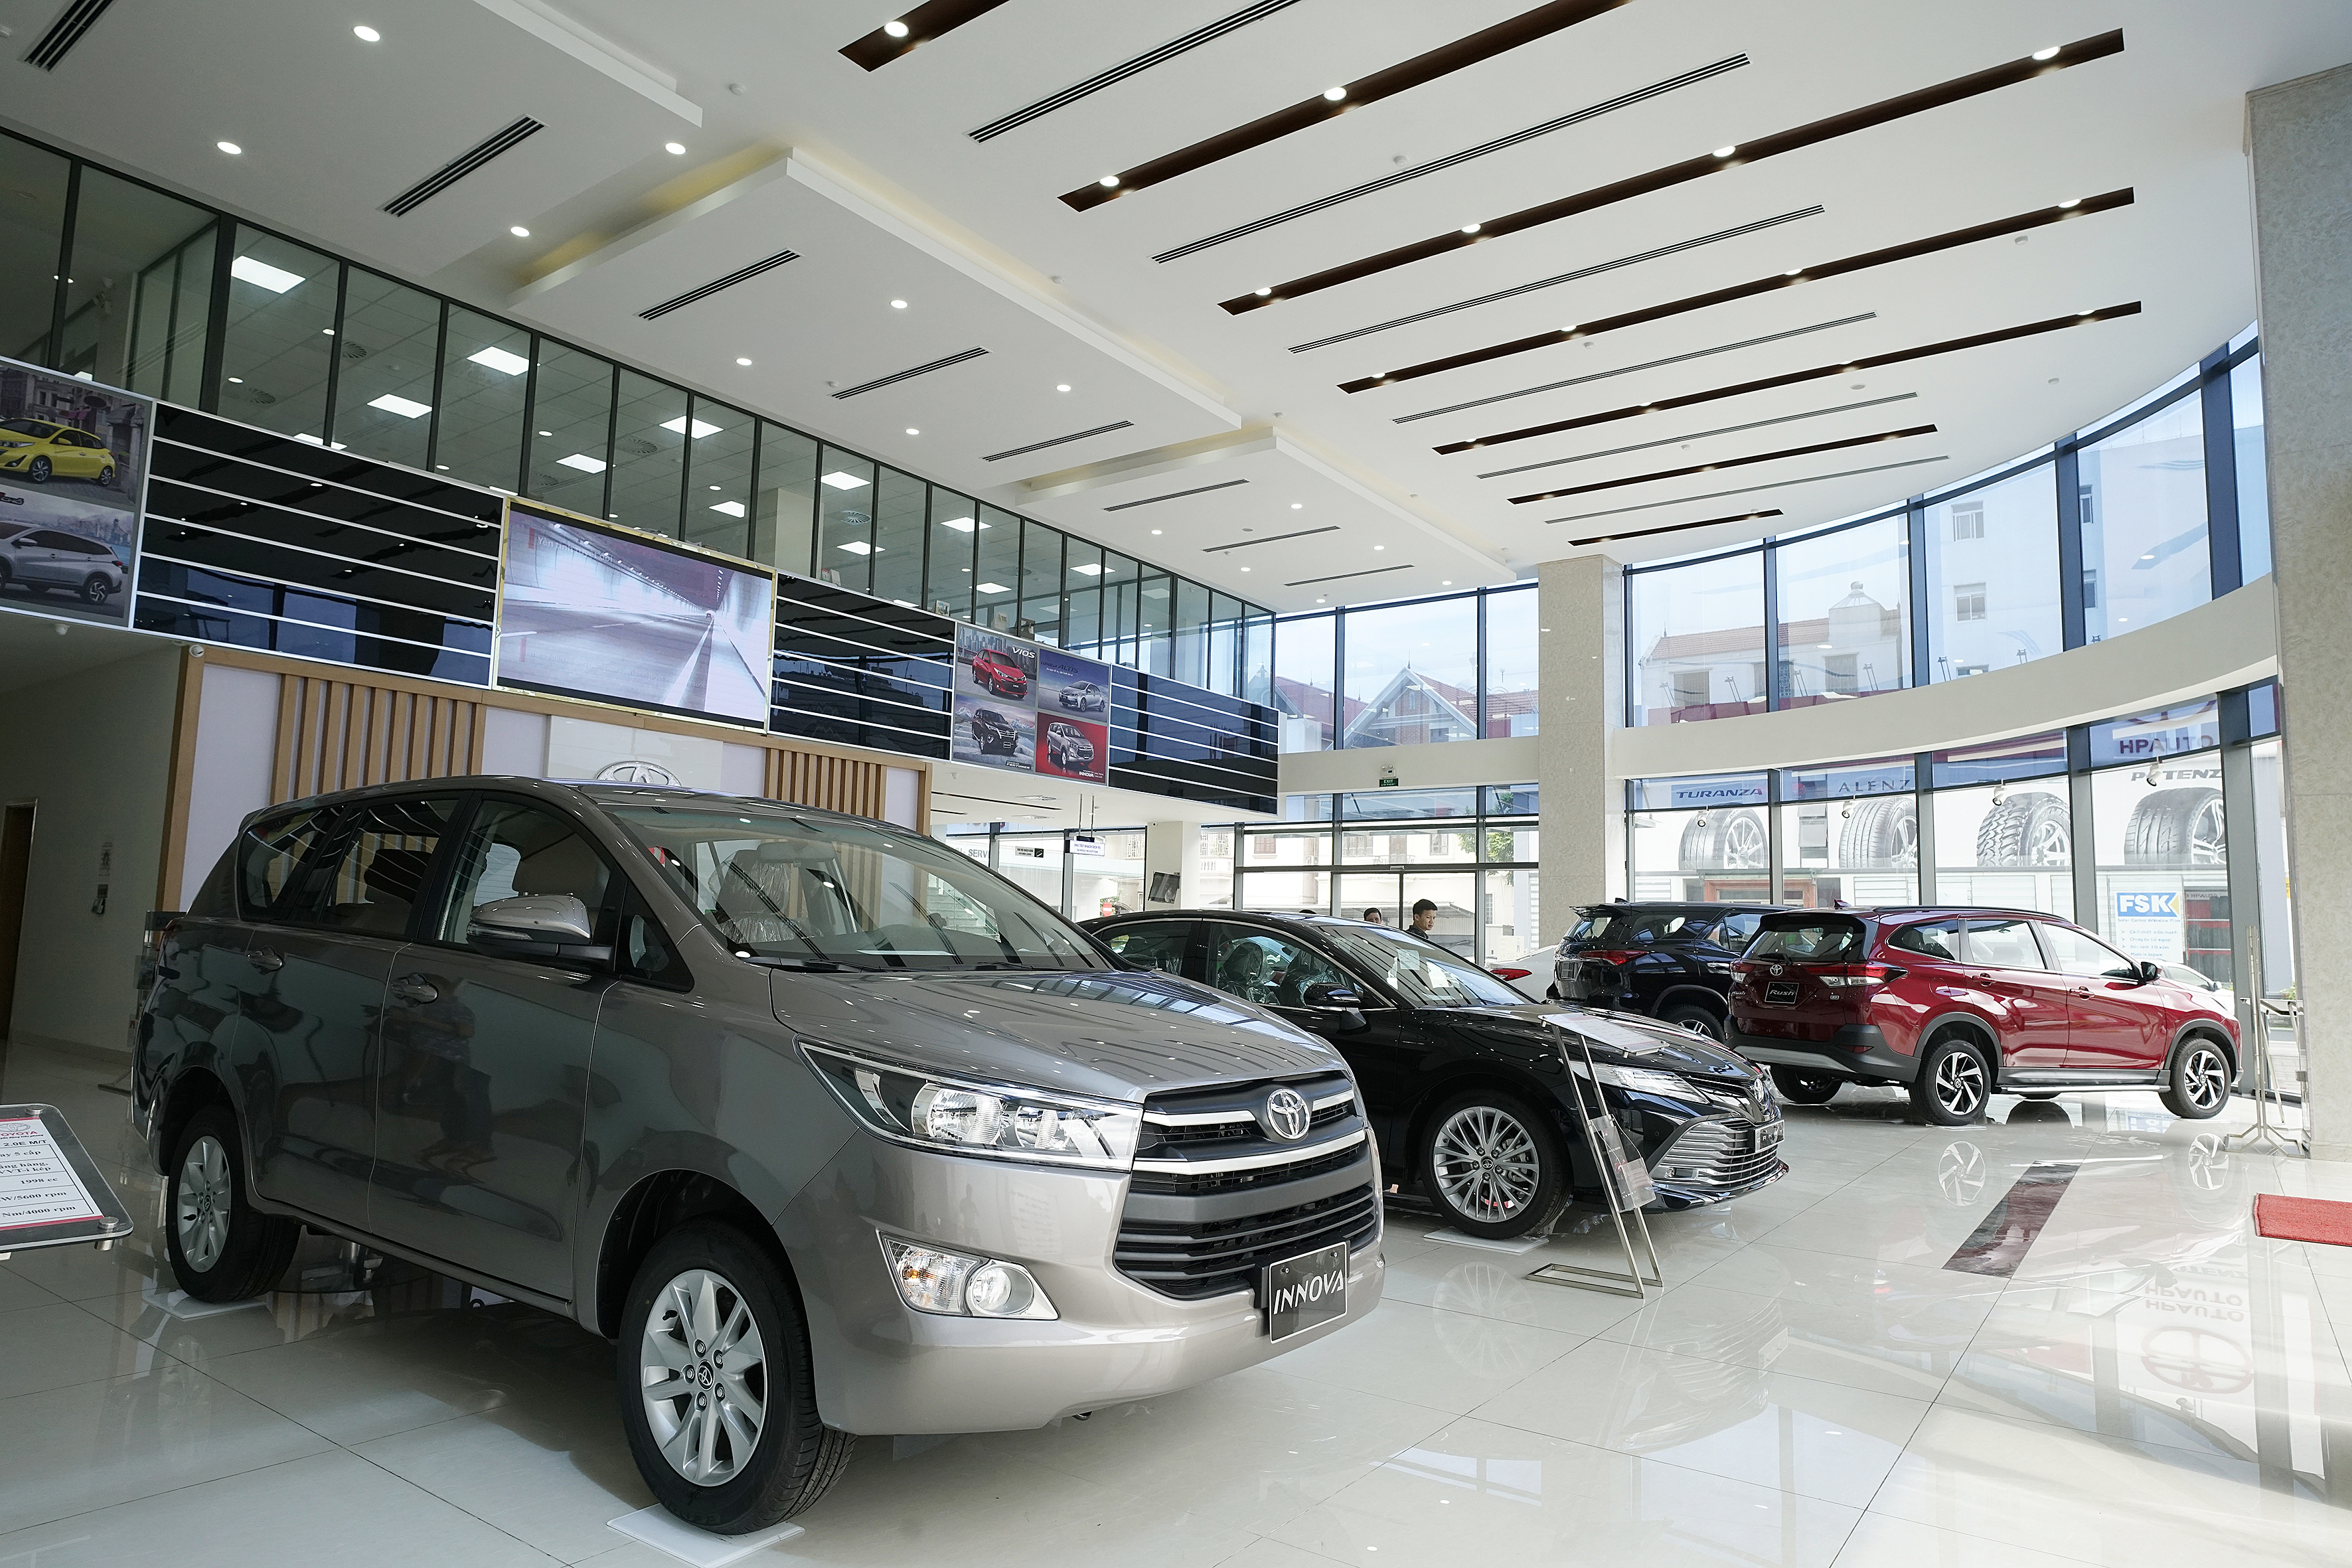 Bảng giá xe Toyota: 5 chỗ, 7 chỗ, bán tải tháng 6/2021 - Ảnh 3